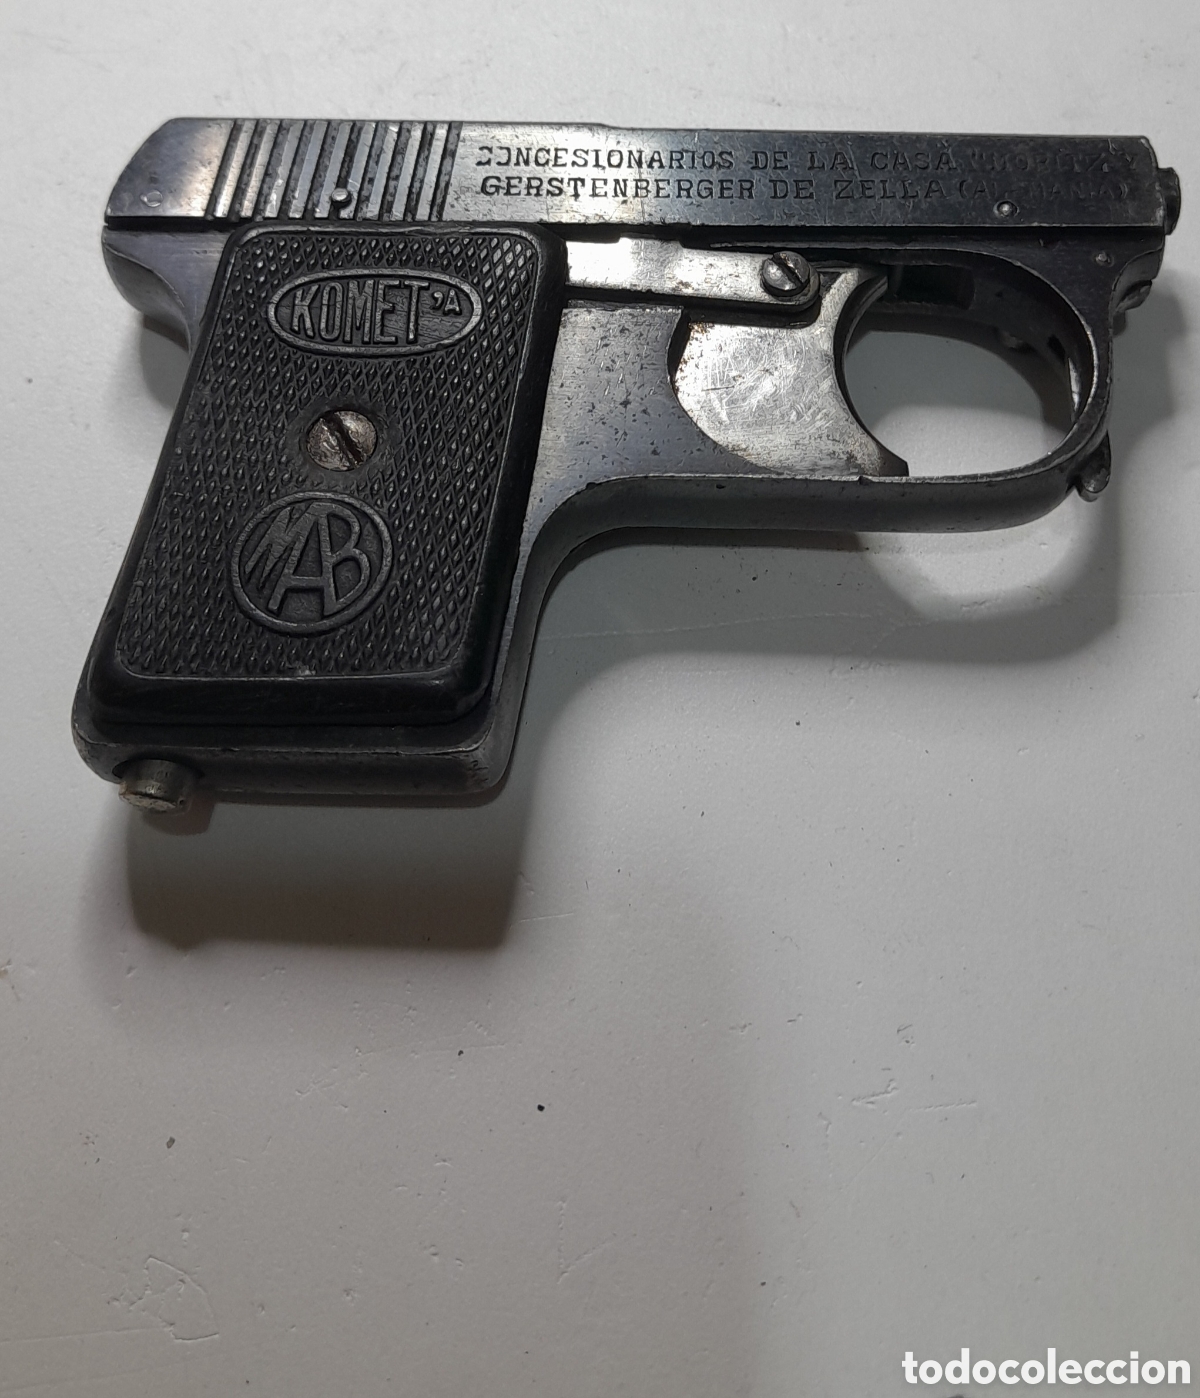 pistola de fogueo-detonadora bruni new police - Comprar Armas de Fogo  antigas em Utilização no todocoleccion